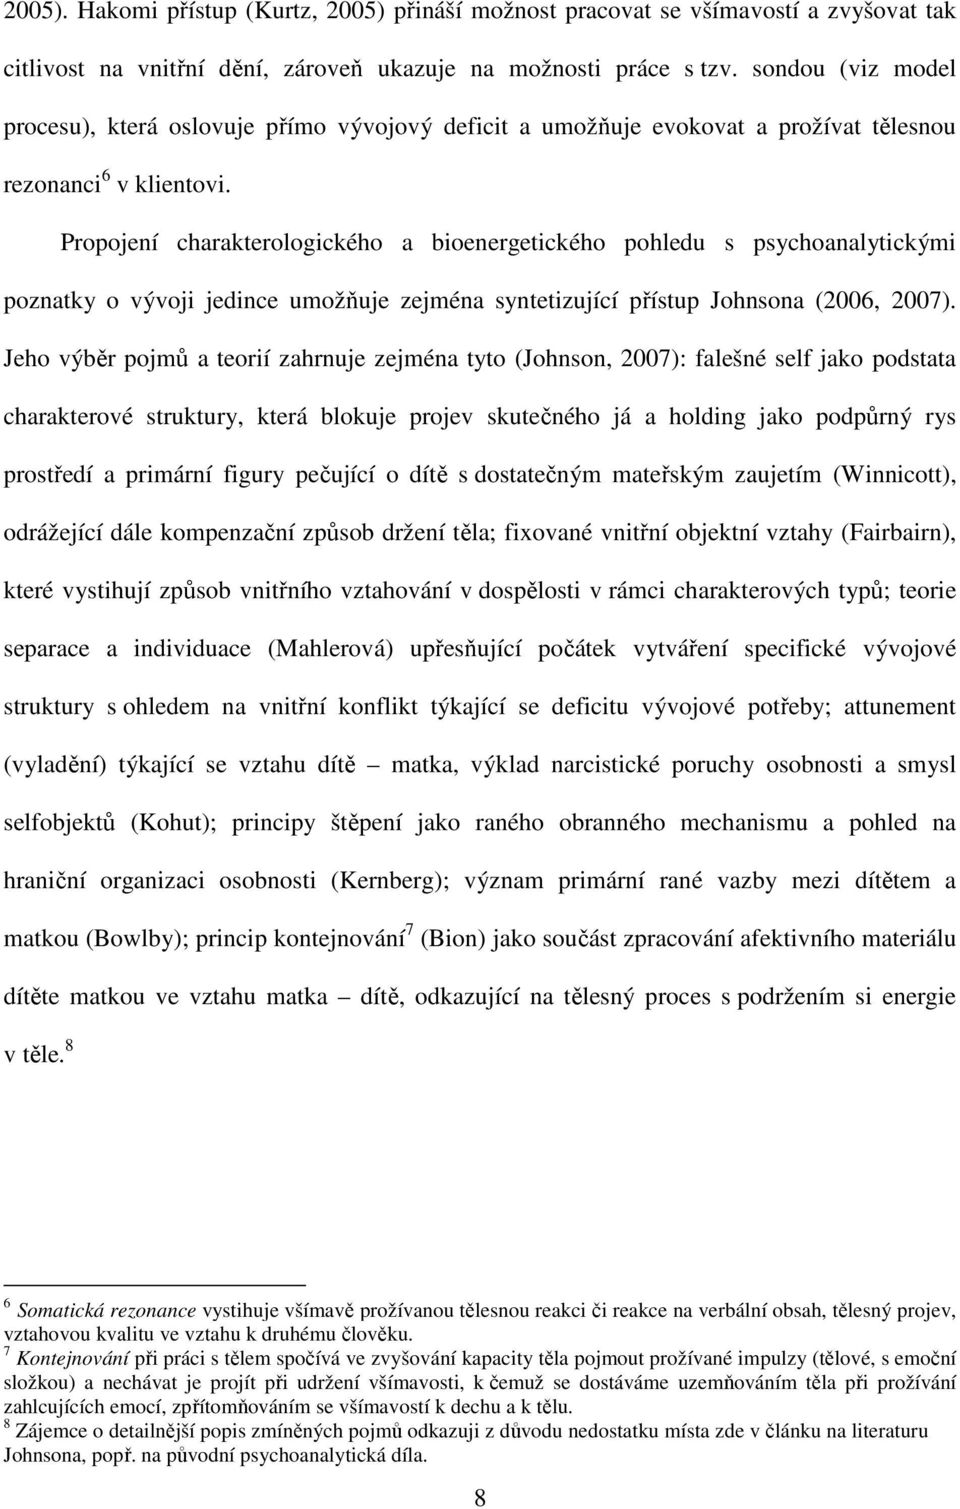 Propojení charakterologického a bioenergetického pohledu s psychoanalytickými poznatky o vývoji jedince umožňuje zejména syntetizující přístup Johnsona (2006, 2007).